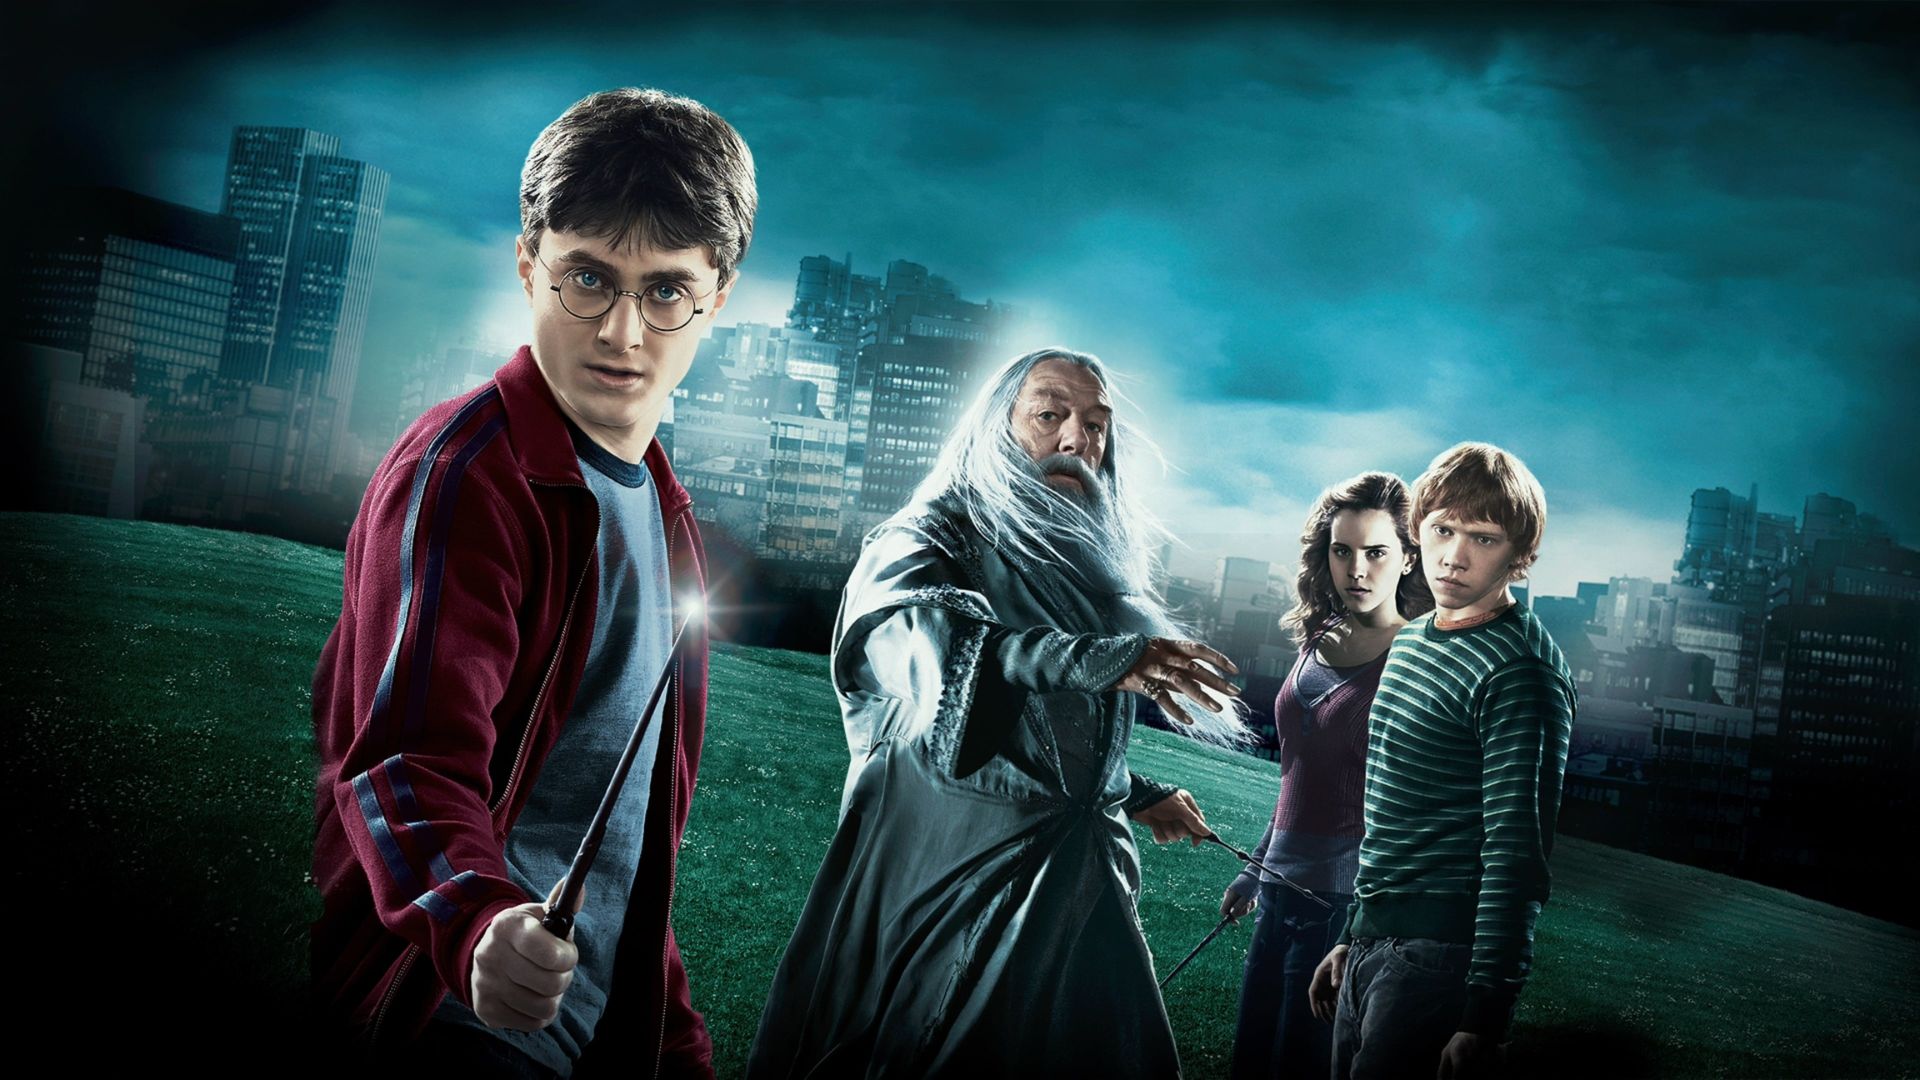 Em "Harry Potter e o Enigma do Príncipe", Harry Potter mergulha nas memórias de Lorde Voldemort para descobrir como acabar com o vilão (Foto: Divulgação/Warner Bros. Pictures)